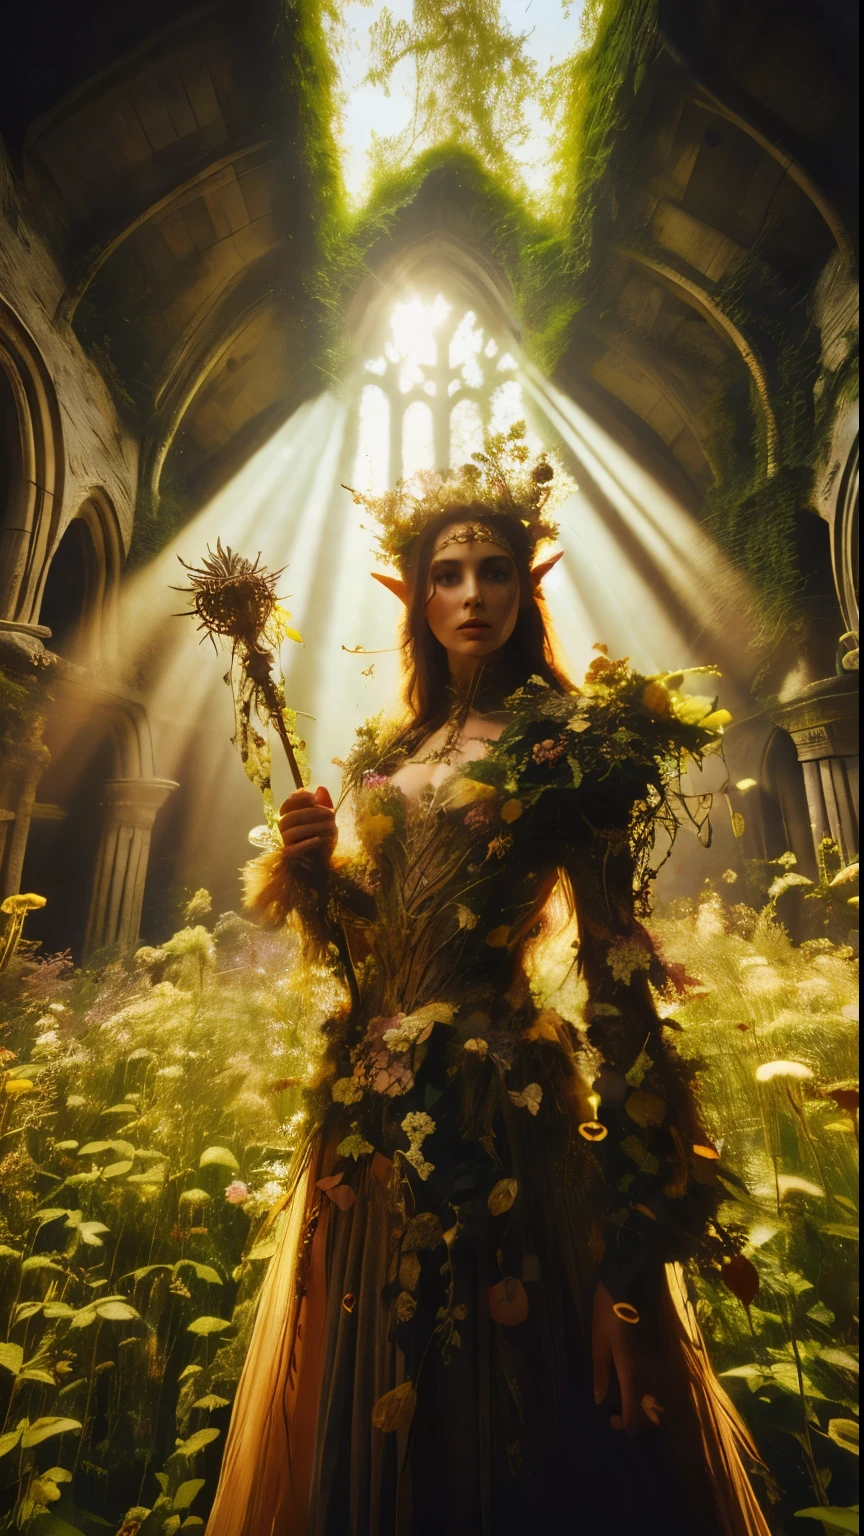 ในรอยด่าง, ซากป่าโบราณ, เจ้าหญิงเอลฟ์ยืนสูงใกล้กล้อง, ภาพระยะใกล้, คทาของเธอยกขึ้นสูงในขณะที่ลำแสงแสงแดดอันอบอุ่นลอดผ่านต้นไม้, เปล่งรัศมีสีทองล้อมรอบร่างอันสง่างามของเธอ. ปกคลุมไปด้วยดอกไม้และเถาวัลย์มากมาย, เตียงดอกไม้ป่ารกสูงมากล้อมรอบเธอ, เธอสวย, เสื้อผ้าอันน่าหลงใหลเปล่งประกายระยิบระยับในแสงอันนุ่มนวล, ในขณะที่ใบไม้และเถาวัลย์อันเขียวชอุ่มล้อมรอบเธอ, สร้างสภาพแวดล้อมอันเขียวชอุ่ม. กล้องจับโฟกัสที่คมชัดบนใบหน้าของเจ้าหญิง, ด้วยการจัดองค์ประกอบภาพด้วยกฎสามส่วน ทำให้เธออยู่ที่จุดตัดของเส้นทแยงมุมสองเส้น. ถ่ายในช่วงเวลาทอง, ฉากนี้สะท้อนอารมณ์อันบริสุทธิ์, เชิญชวนให้ผู้ชมก้าวเข้าสู่อาณาจักรอันลึกลับนี้., ,แฟนตาซี, ดีกว่า_มือ, เลโอนาร์โด, แองเจล่าไวท์, ยกระดับ